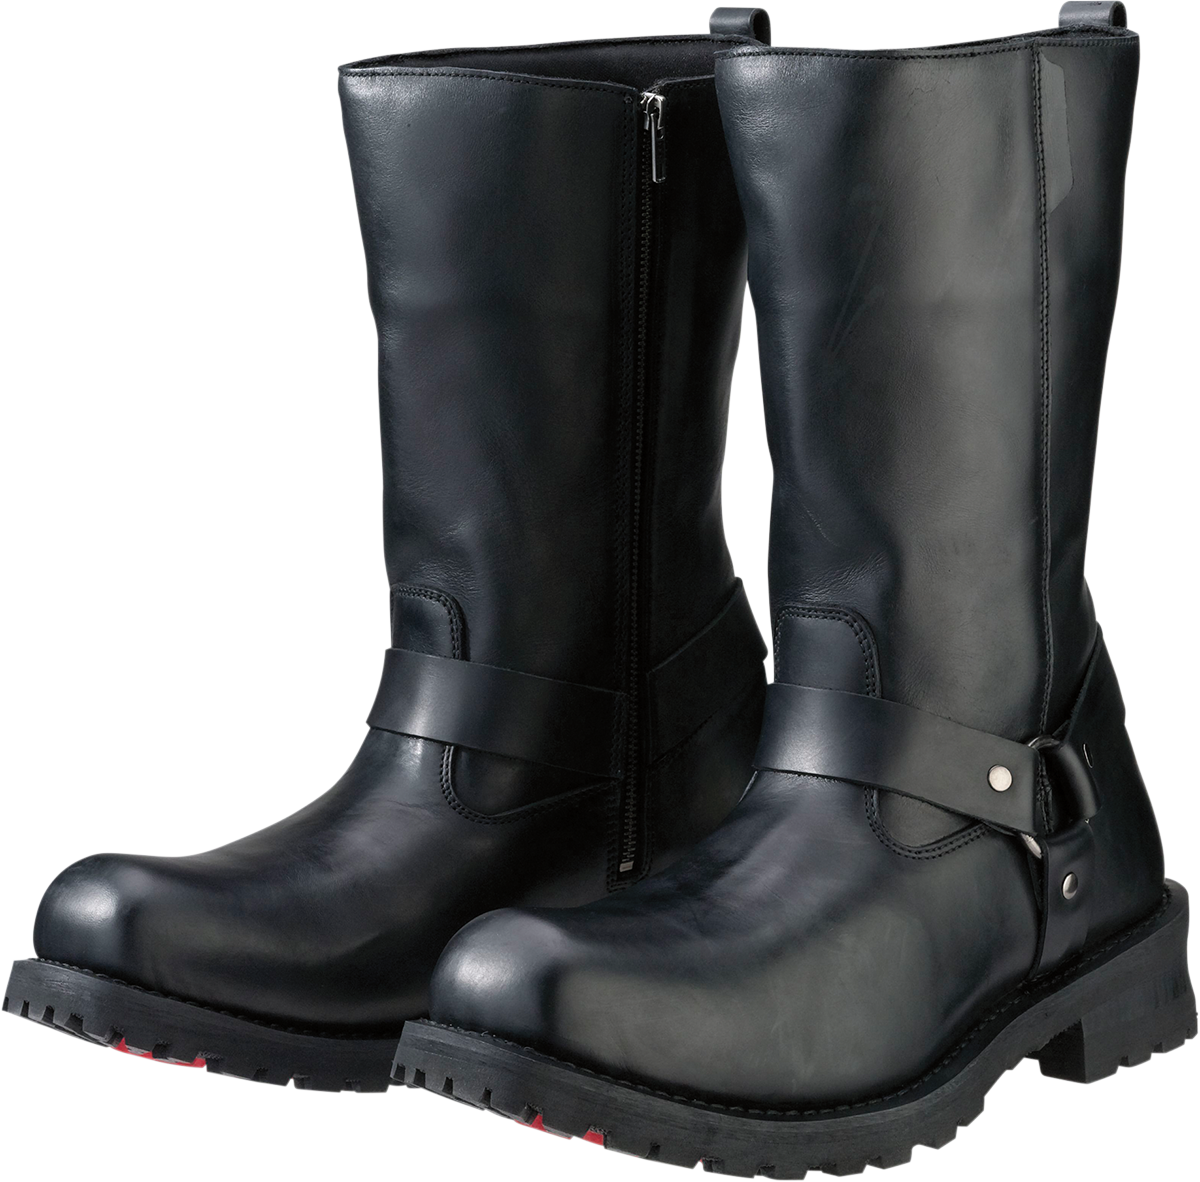 Z1R Riot Boots - Black - US 10.5 3403-0758